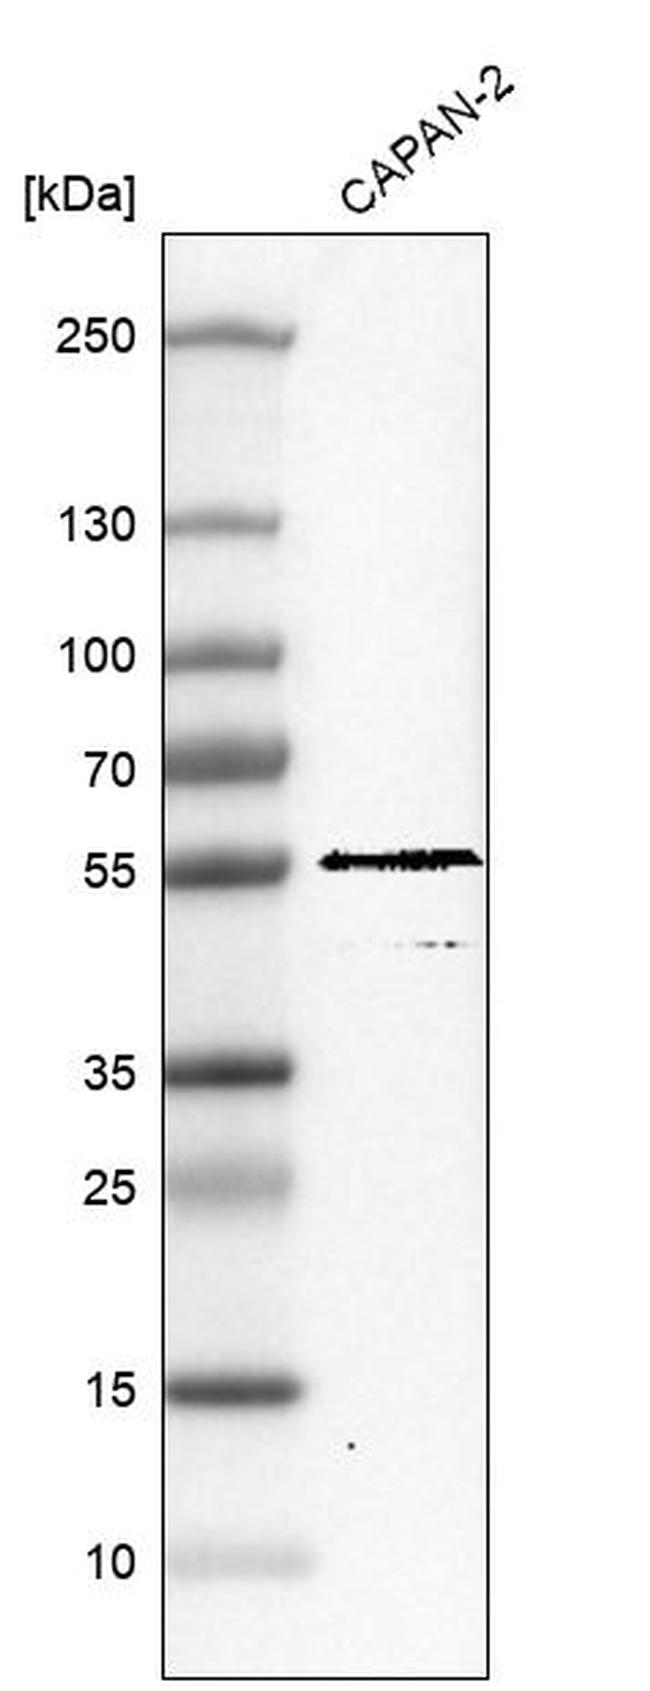 TRIM21 Antibody in Western Blot (WB)